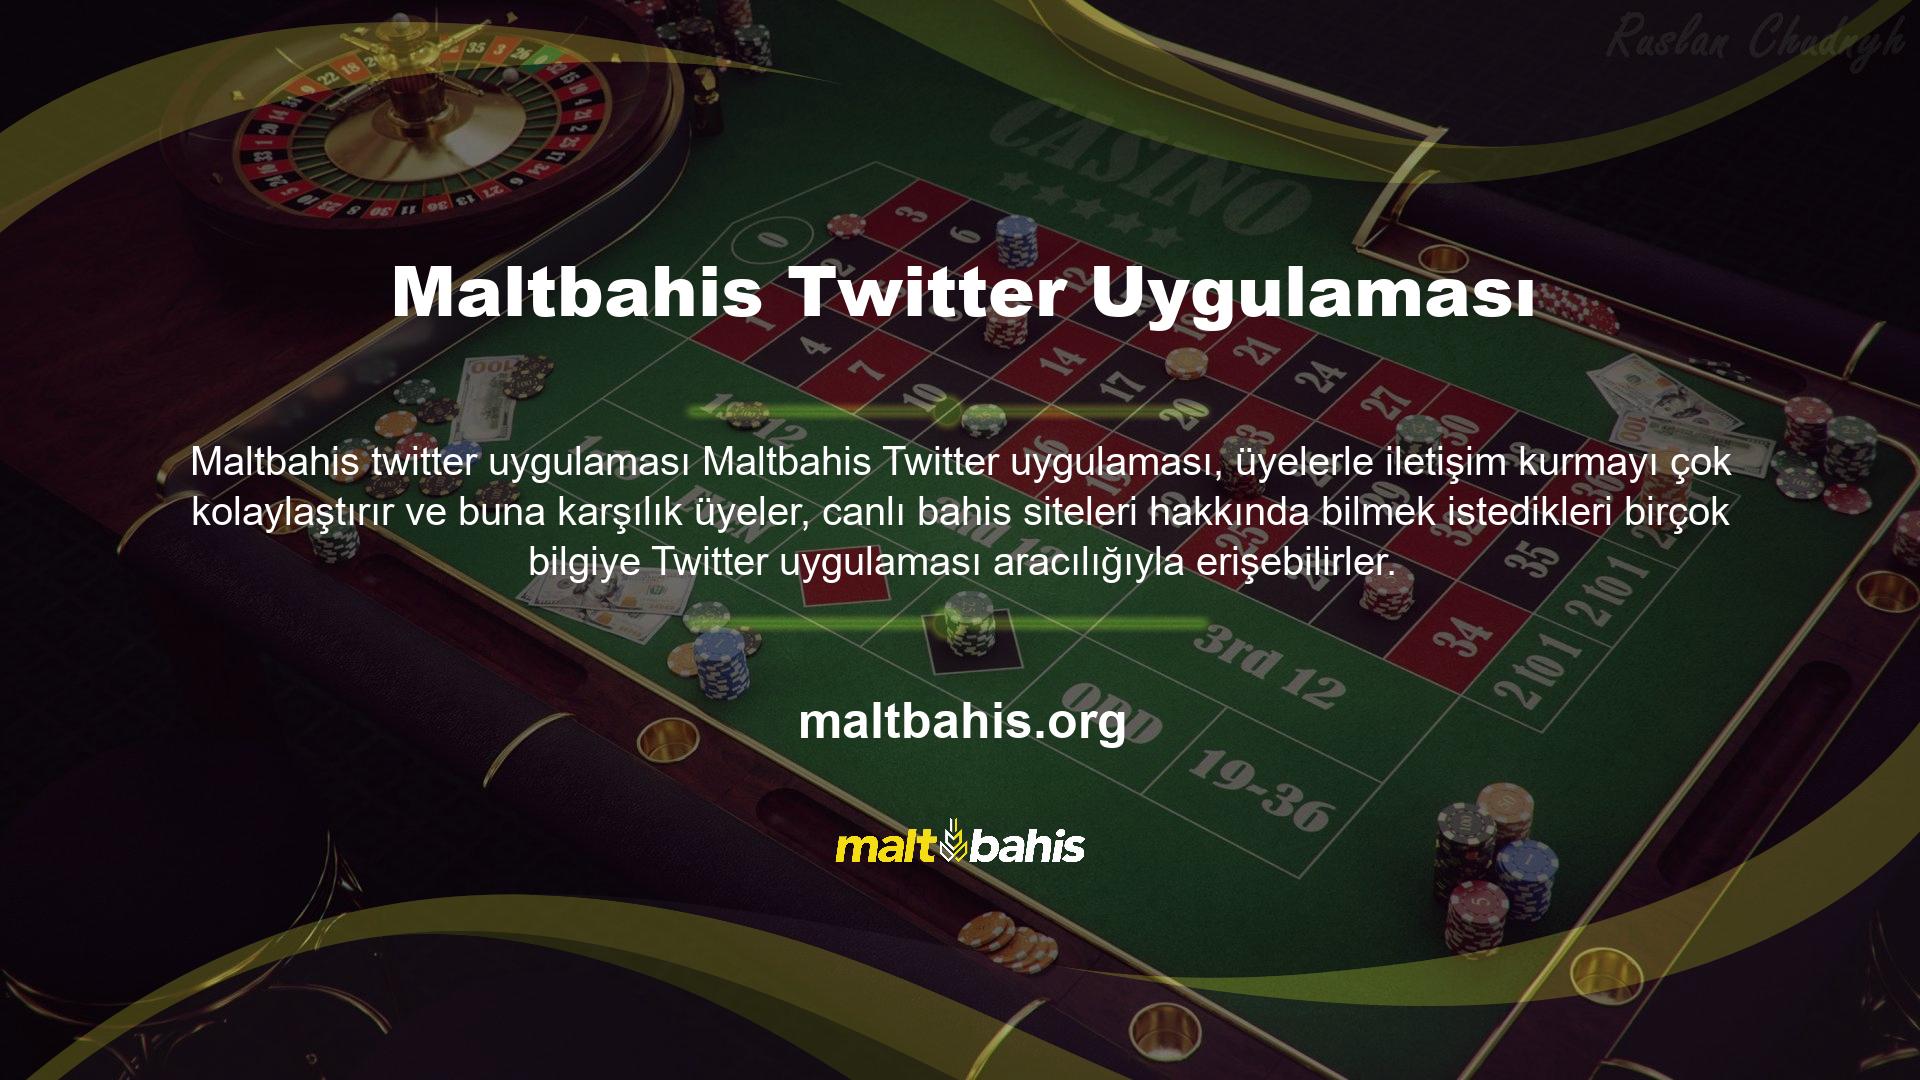 Diğer oyun sitelerinin aksine Maltbahis sosyal medya hesaplarını oldukça etkin bir şekilde kullanmaktadır